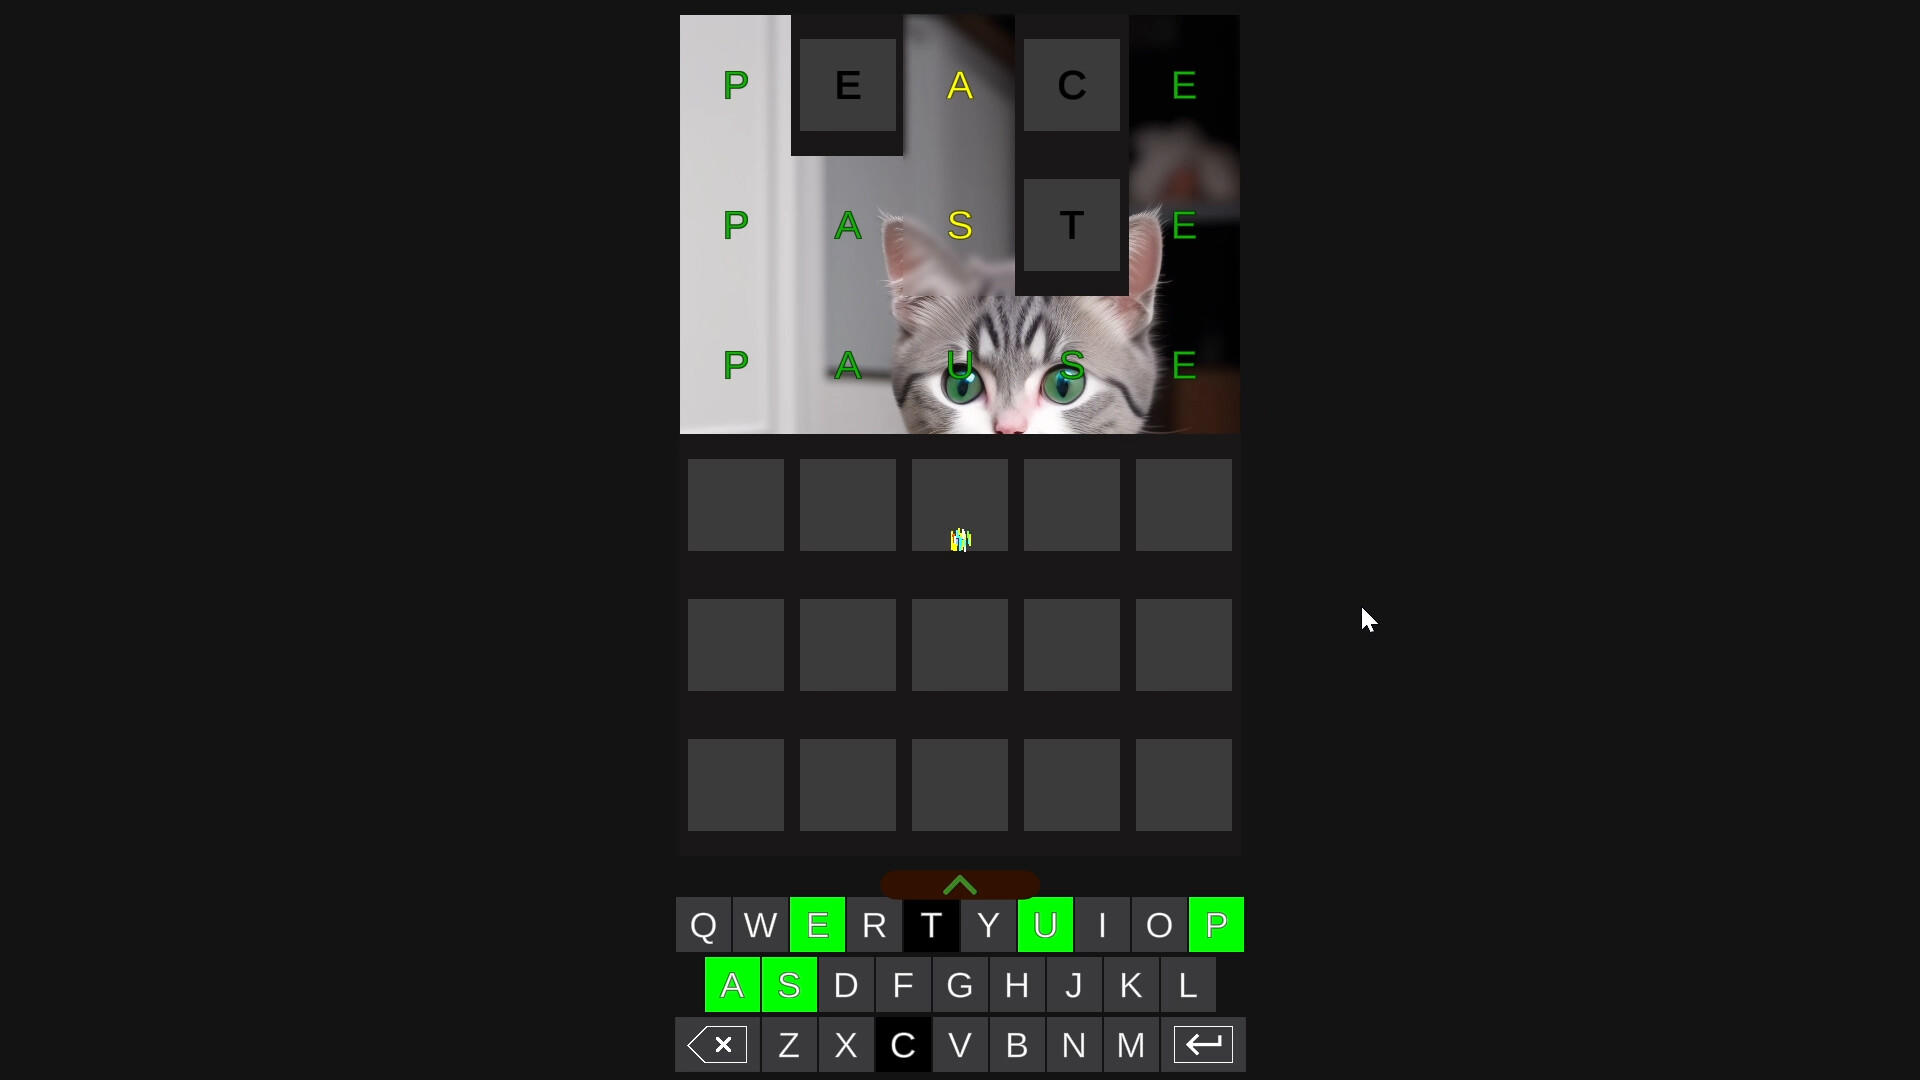 pWordle screenshot game